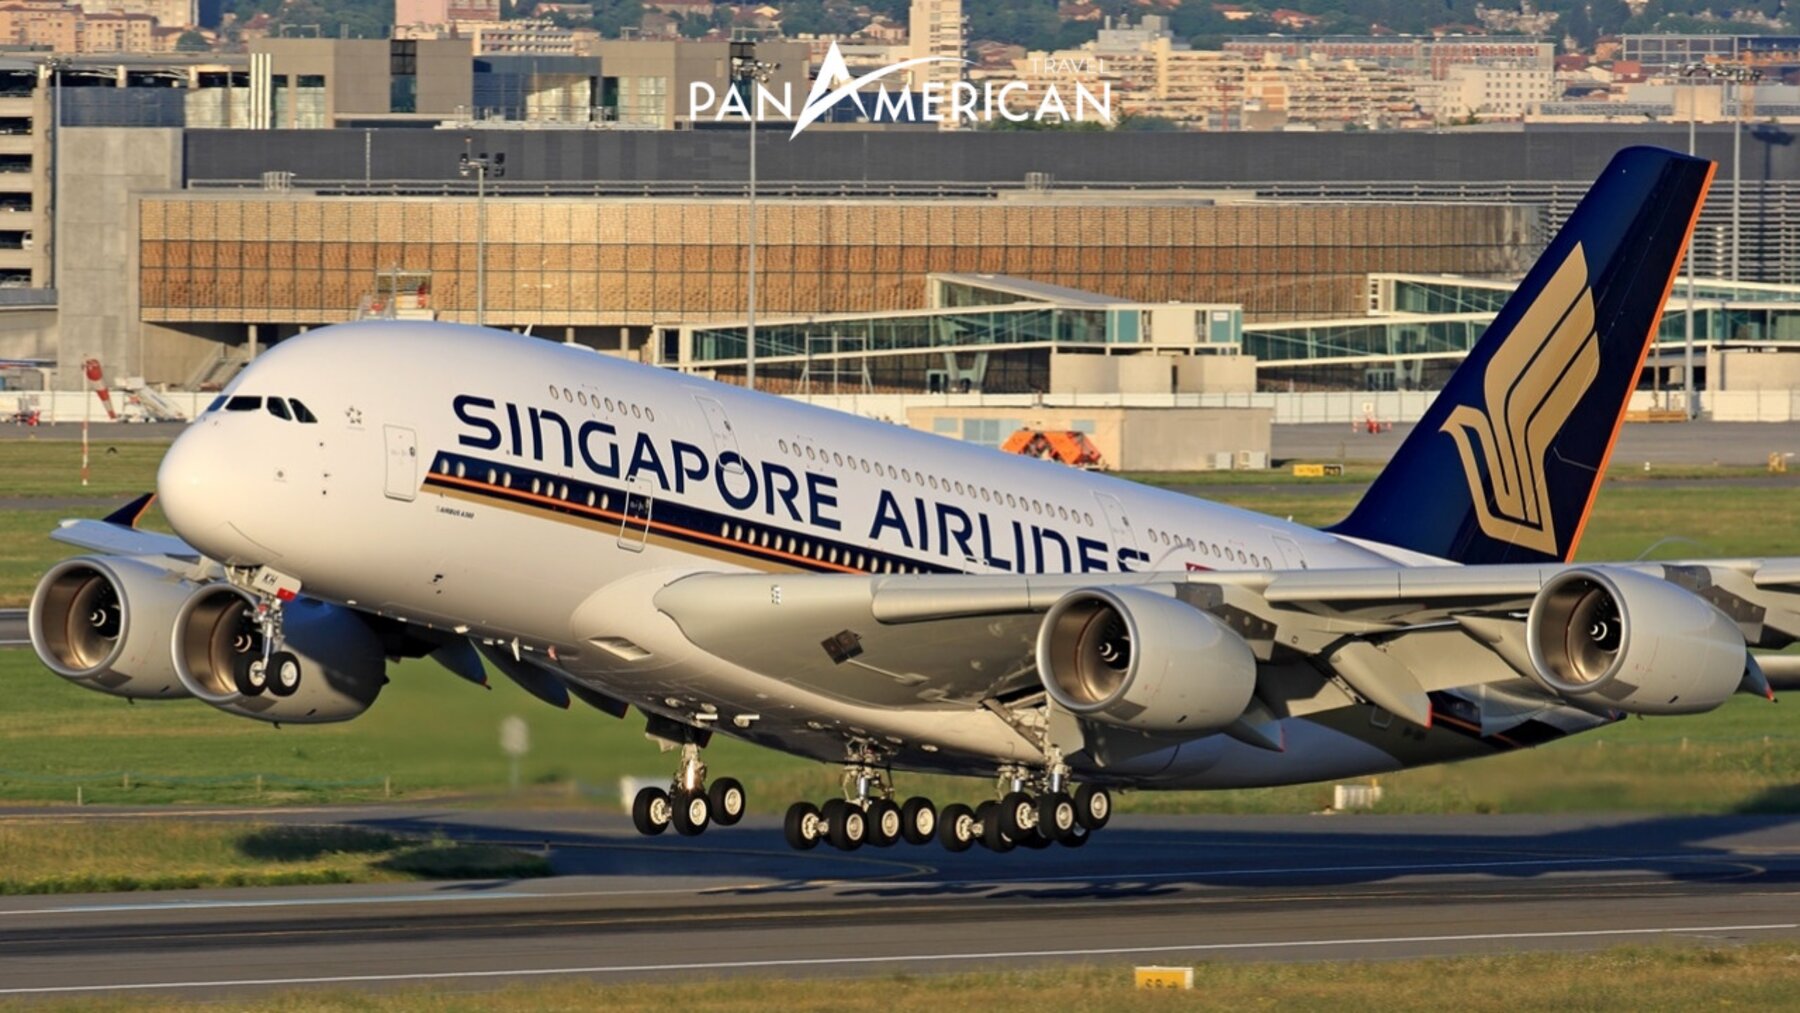 Hãng hàng không Singapore Airlines mang đến trải nghiệm tốt cho hành khách